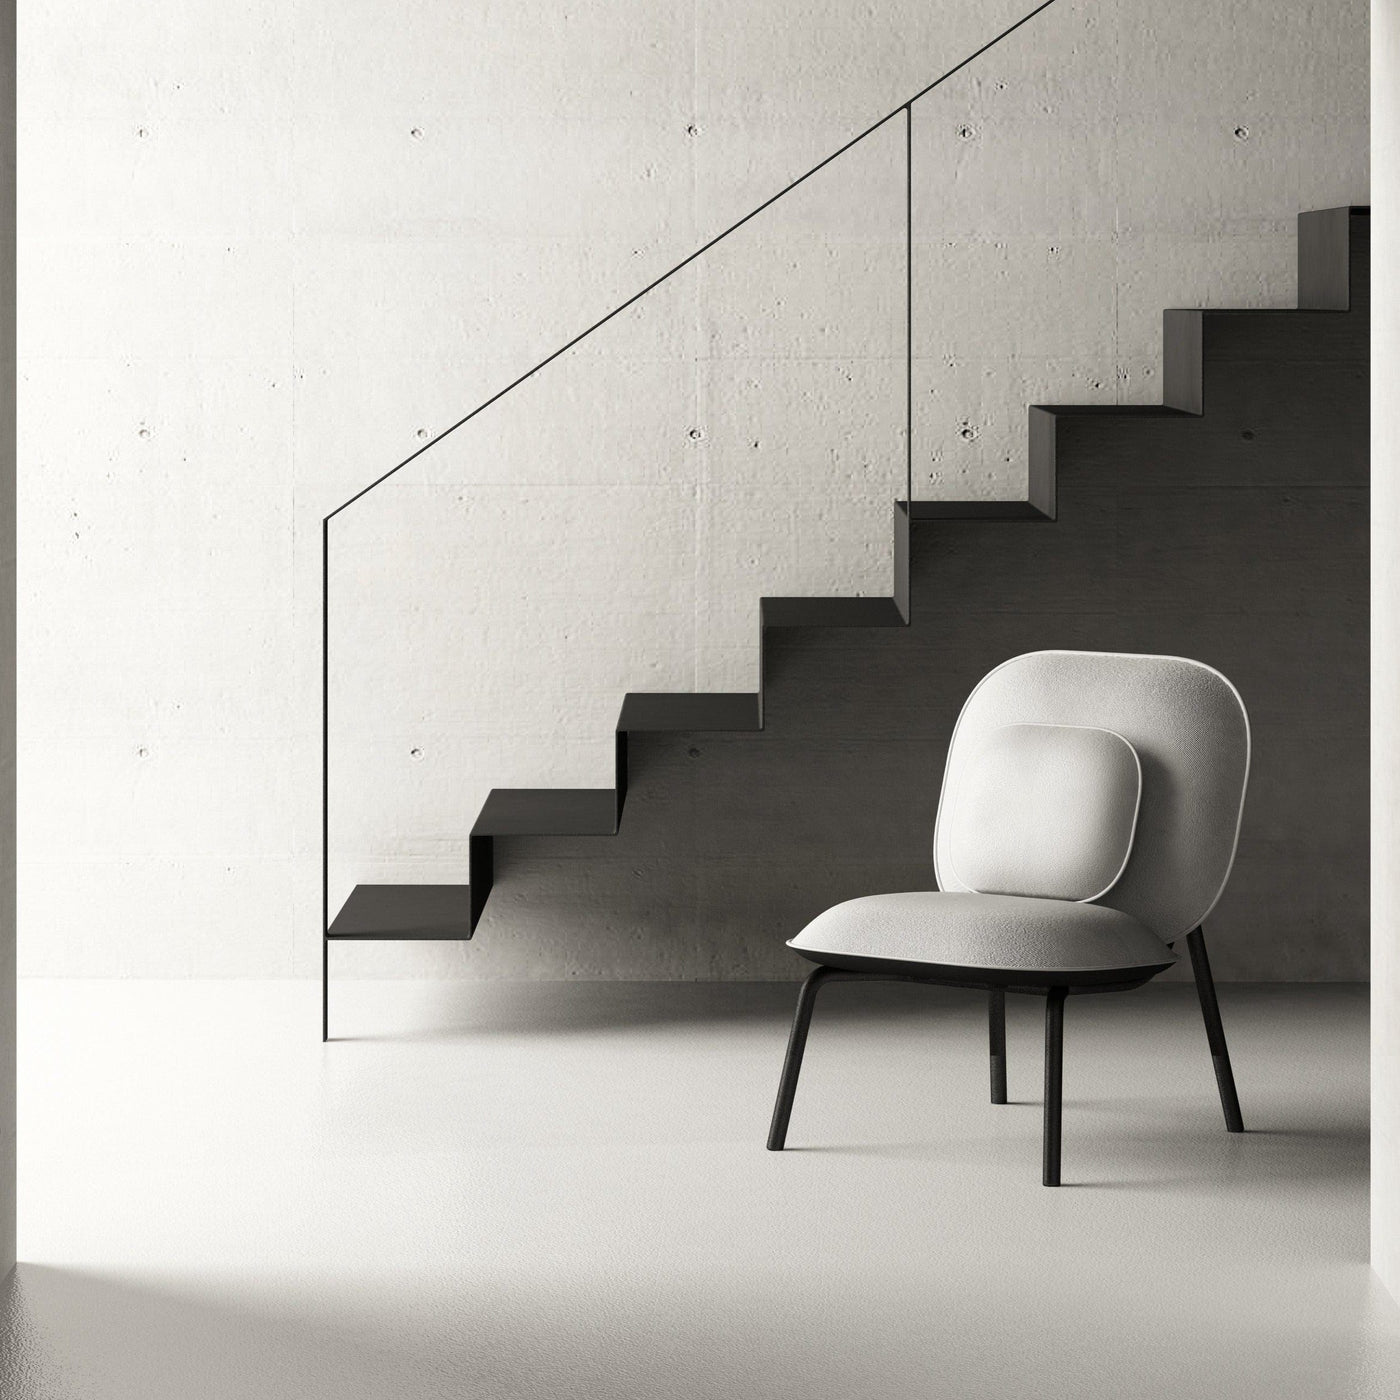 Conçue avec une double fonction, pour les espaces privés et publics, la collection Tasca se compose d'une chaise et d'un repose-pieds, caractérisés par un design moderne et une élégance irrésistible et intemporelle.